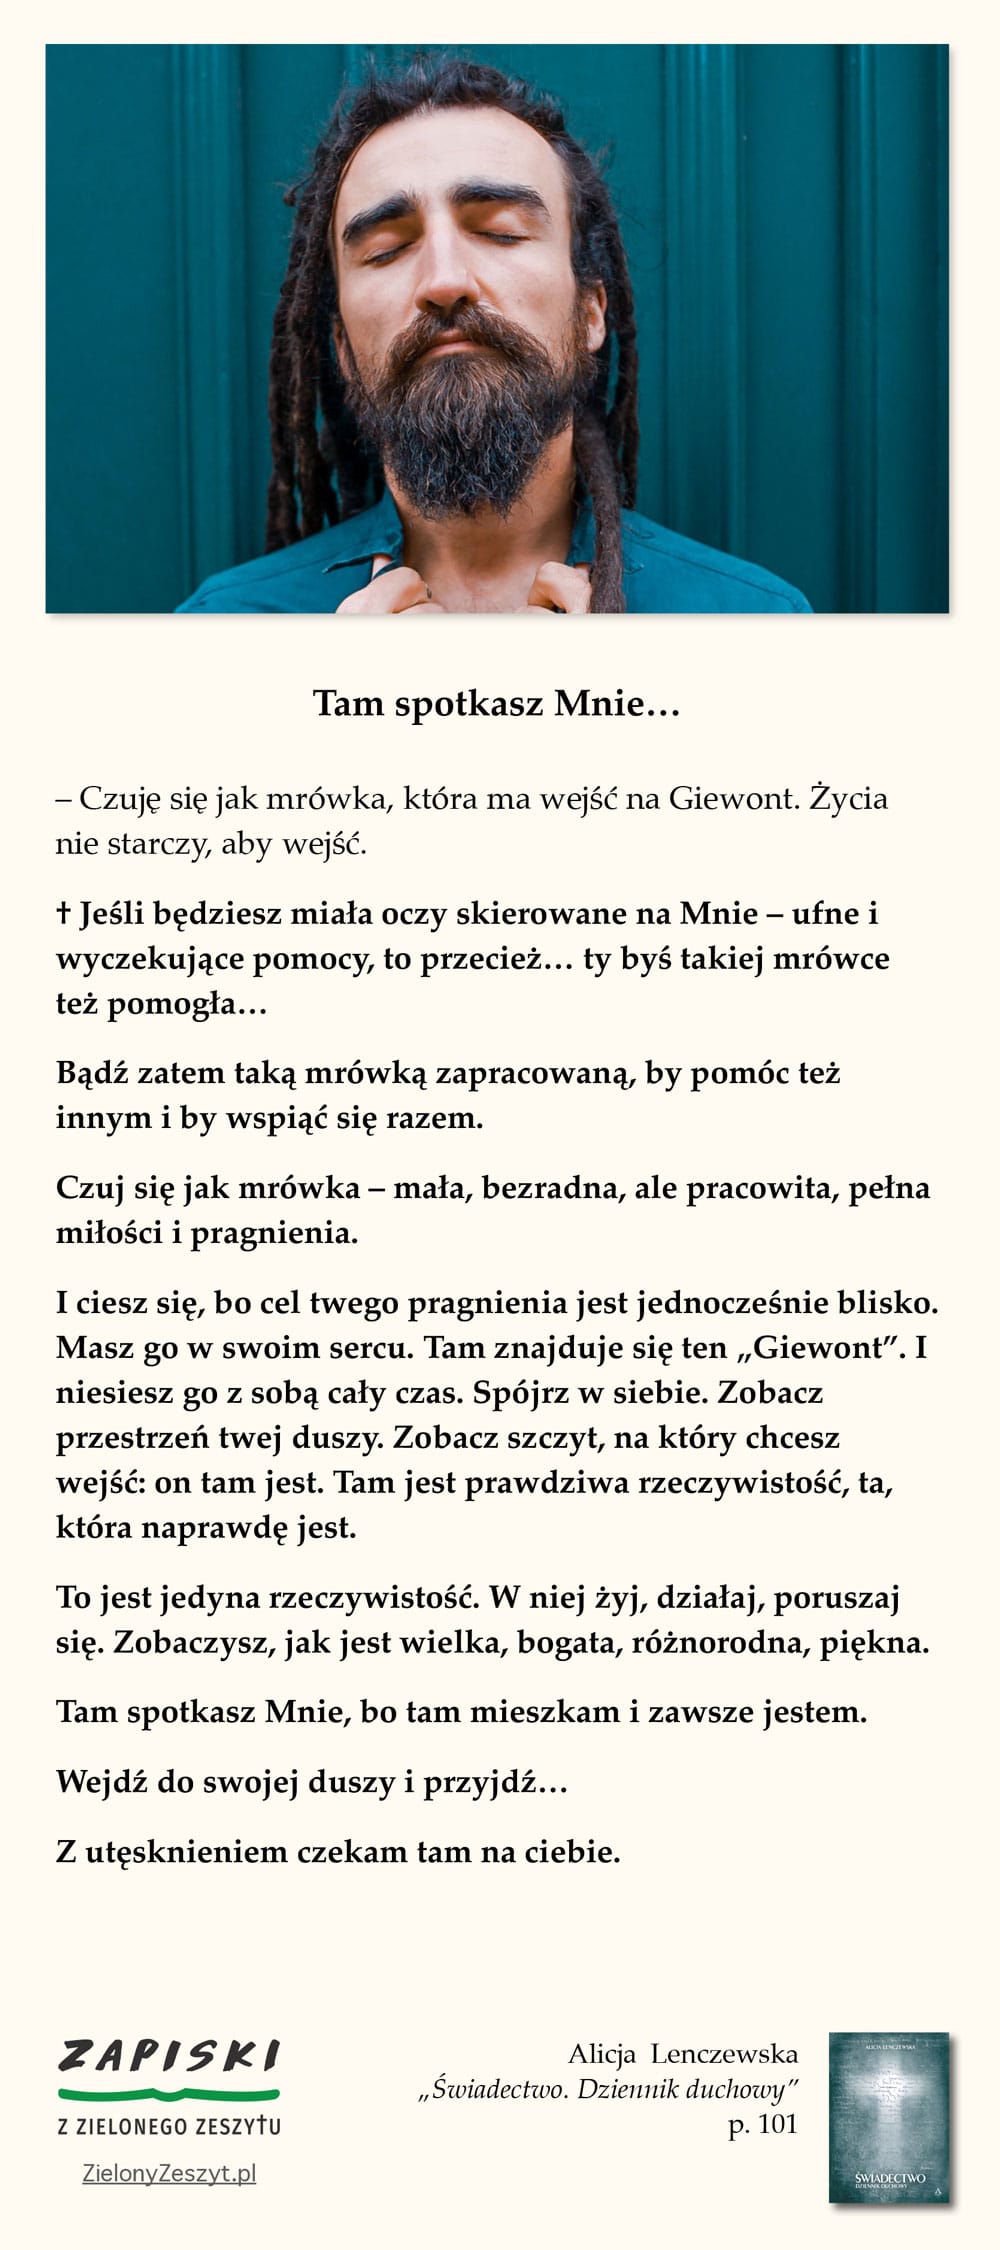 Alicja Lenczewska, „Świadectwo. Dziennik duchowy”, p. 101 (Tam spotkasz Mnie…)